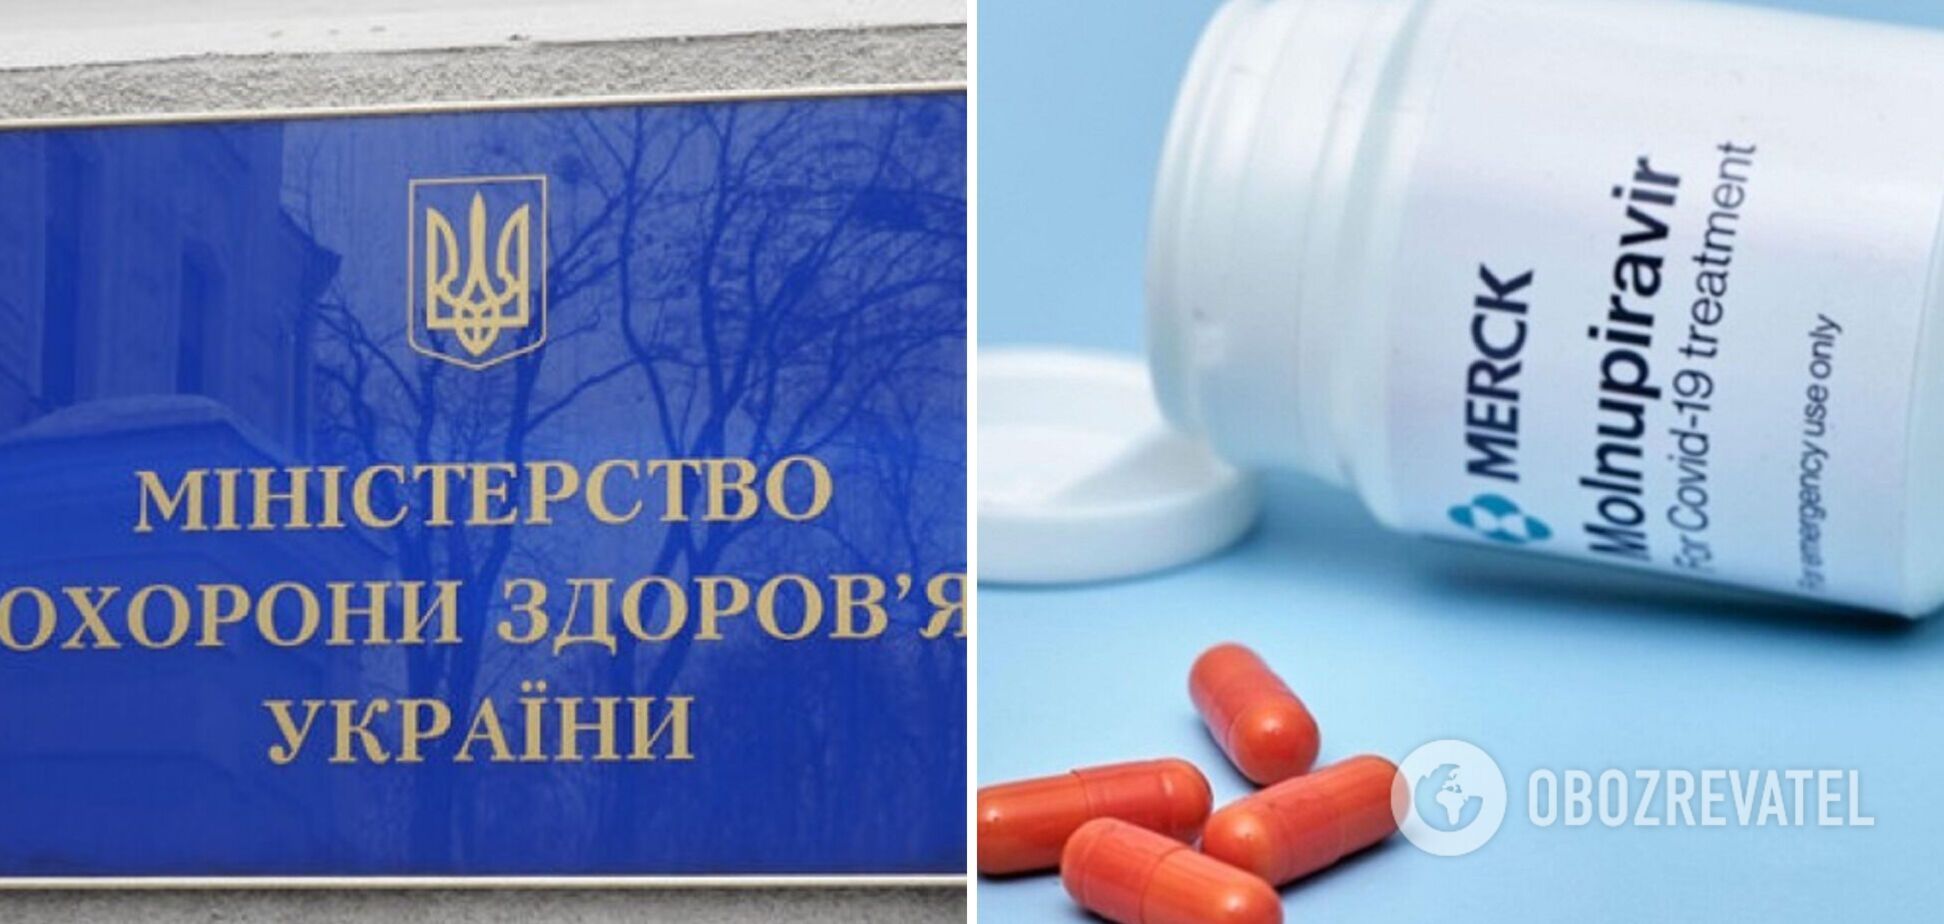 Кто и как может получить препарат от COVID-19 'Молнупиравир' в Украине: разъяснение Минздрава